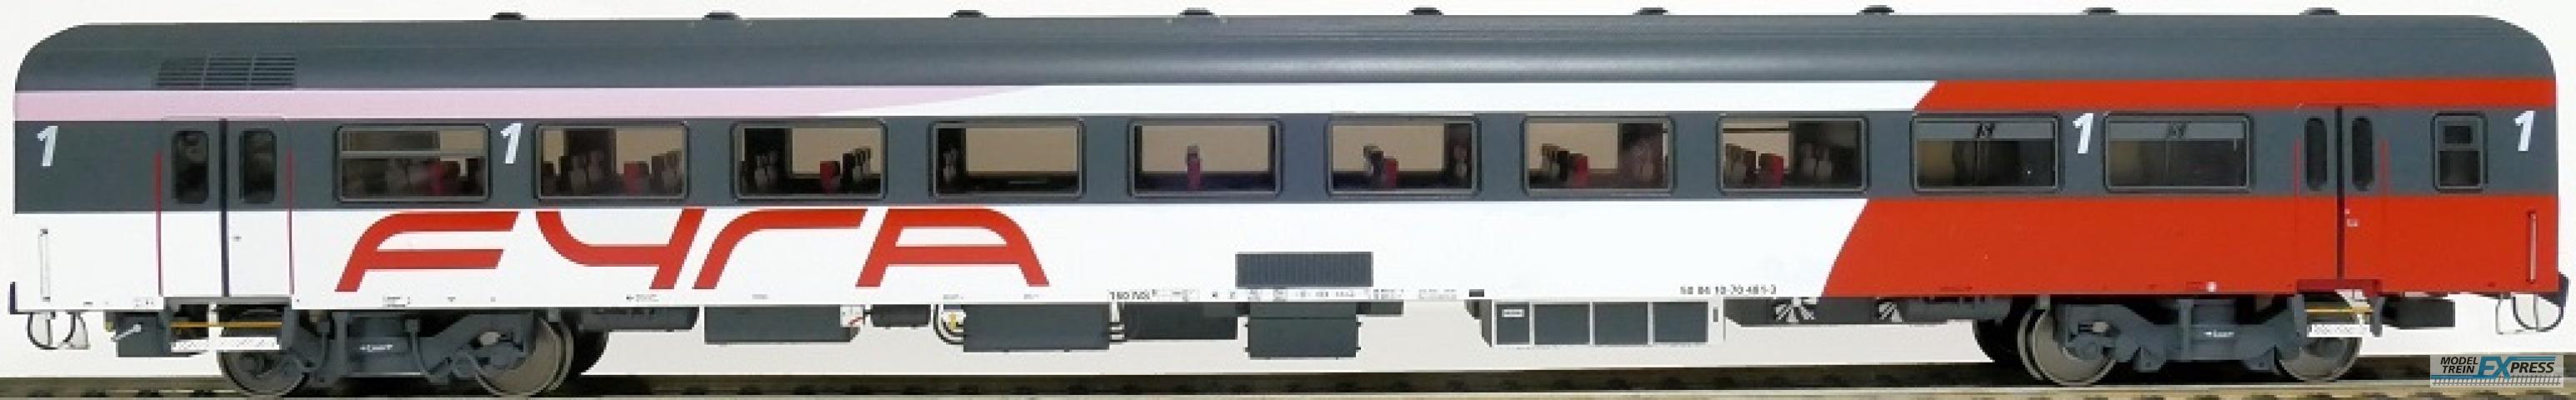 Exact-train 11188 ICRm Fyra 1 (Amsterdam - Brussel) für die Hsl-Strecke eingesetzt Reisezugwagen A(Rot/Weiss/Rose) mit Beleuchtung und Figuren, Ep. VI